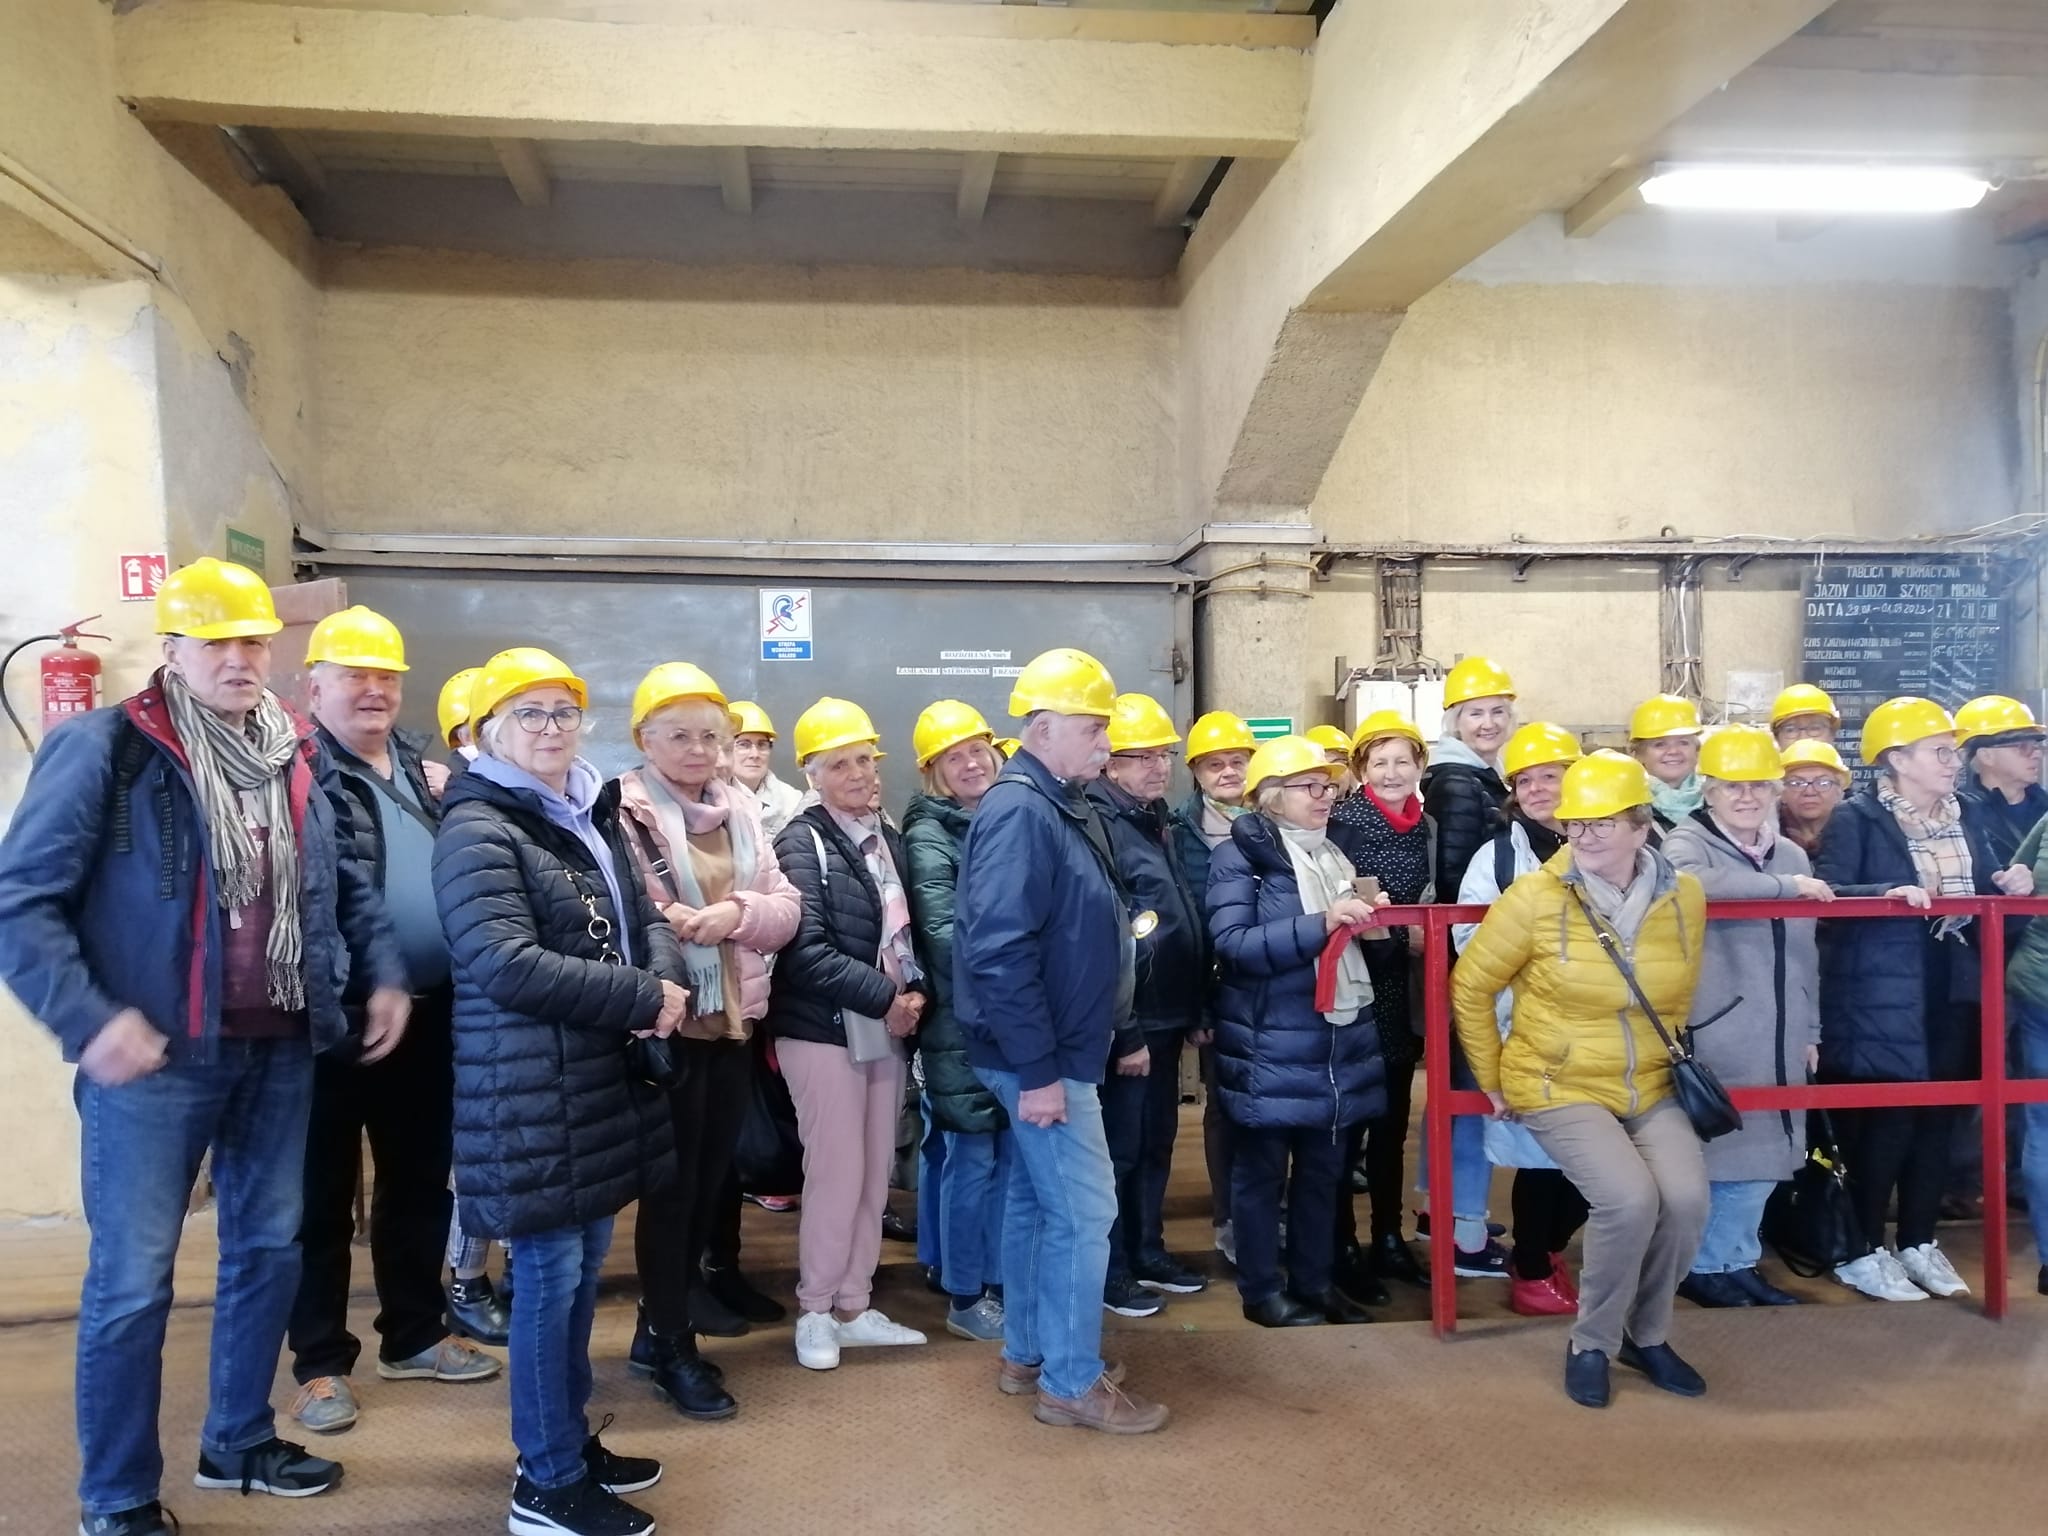 Grupa seniorów w oczekiwaniu na windę w kopalni soli w Kłodawie. Każdy ma żółty kask na głowie